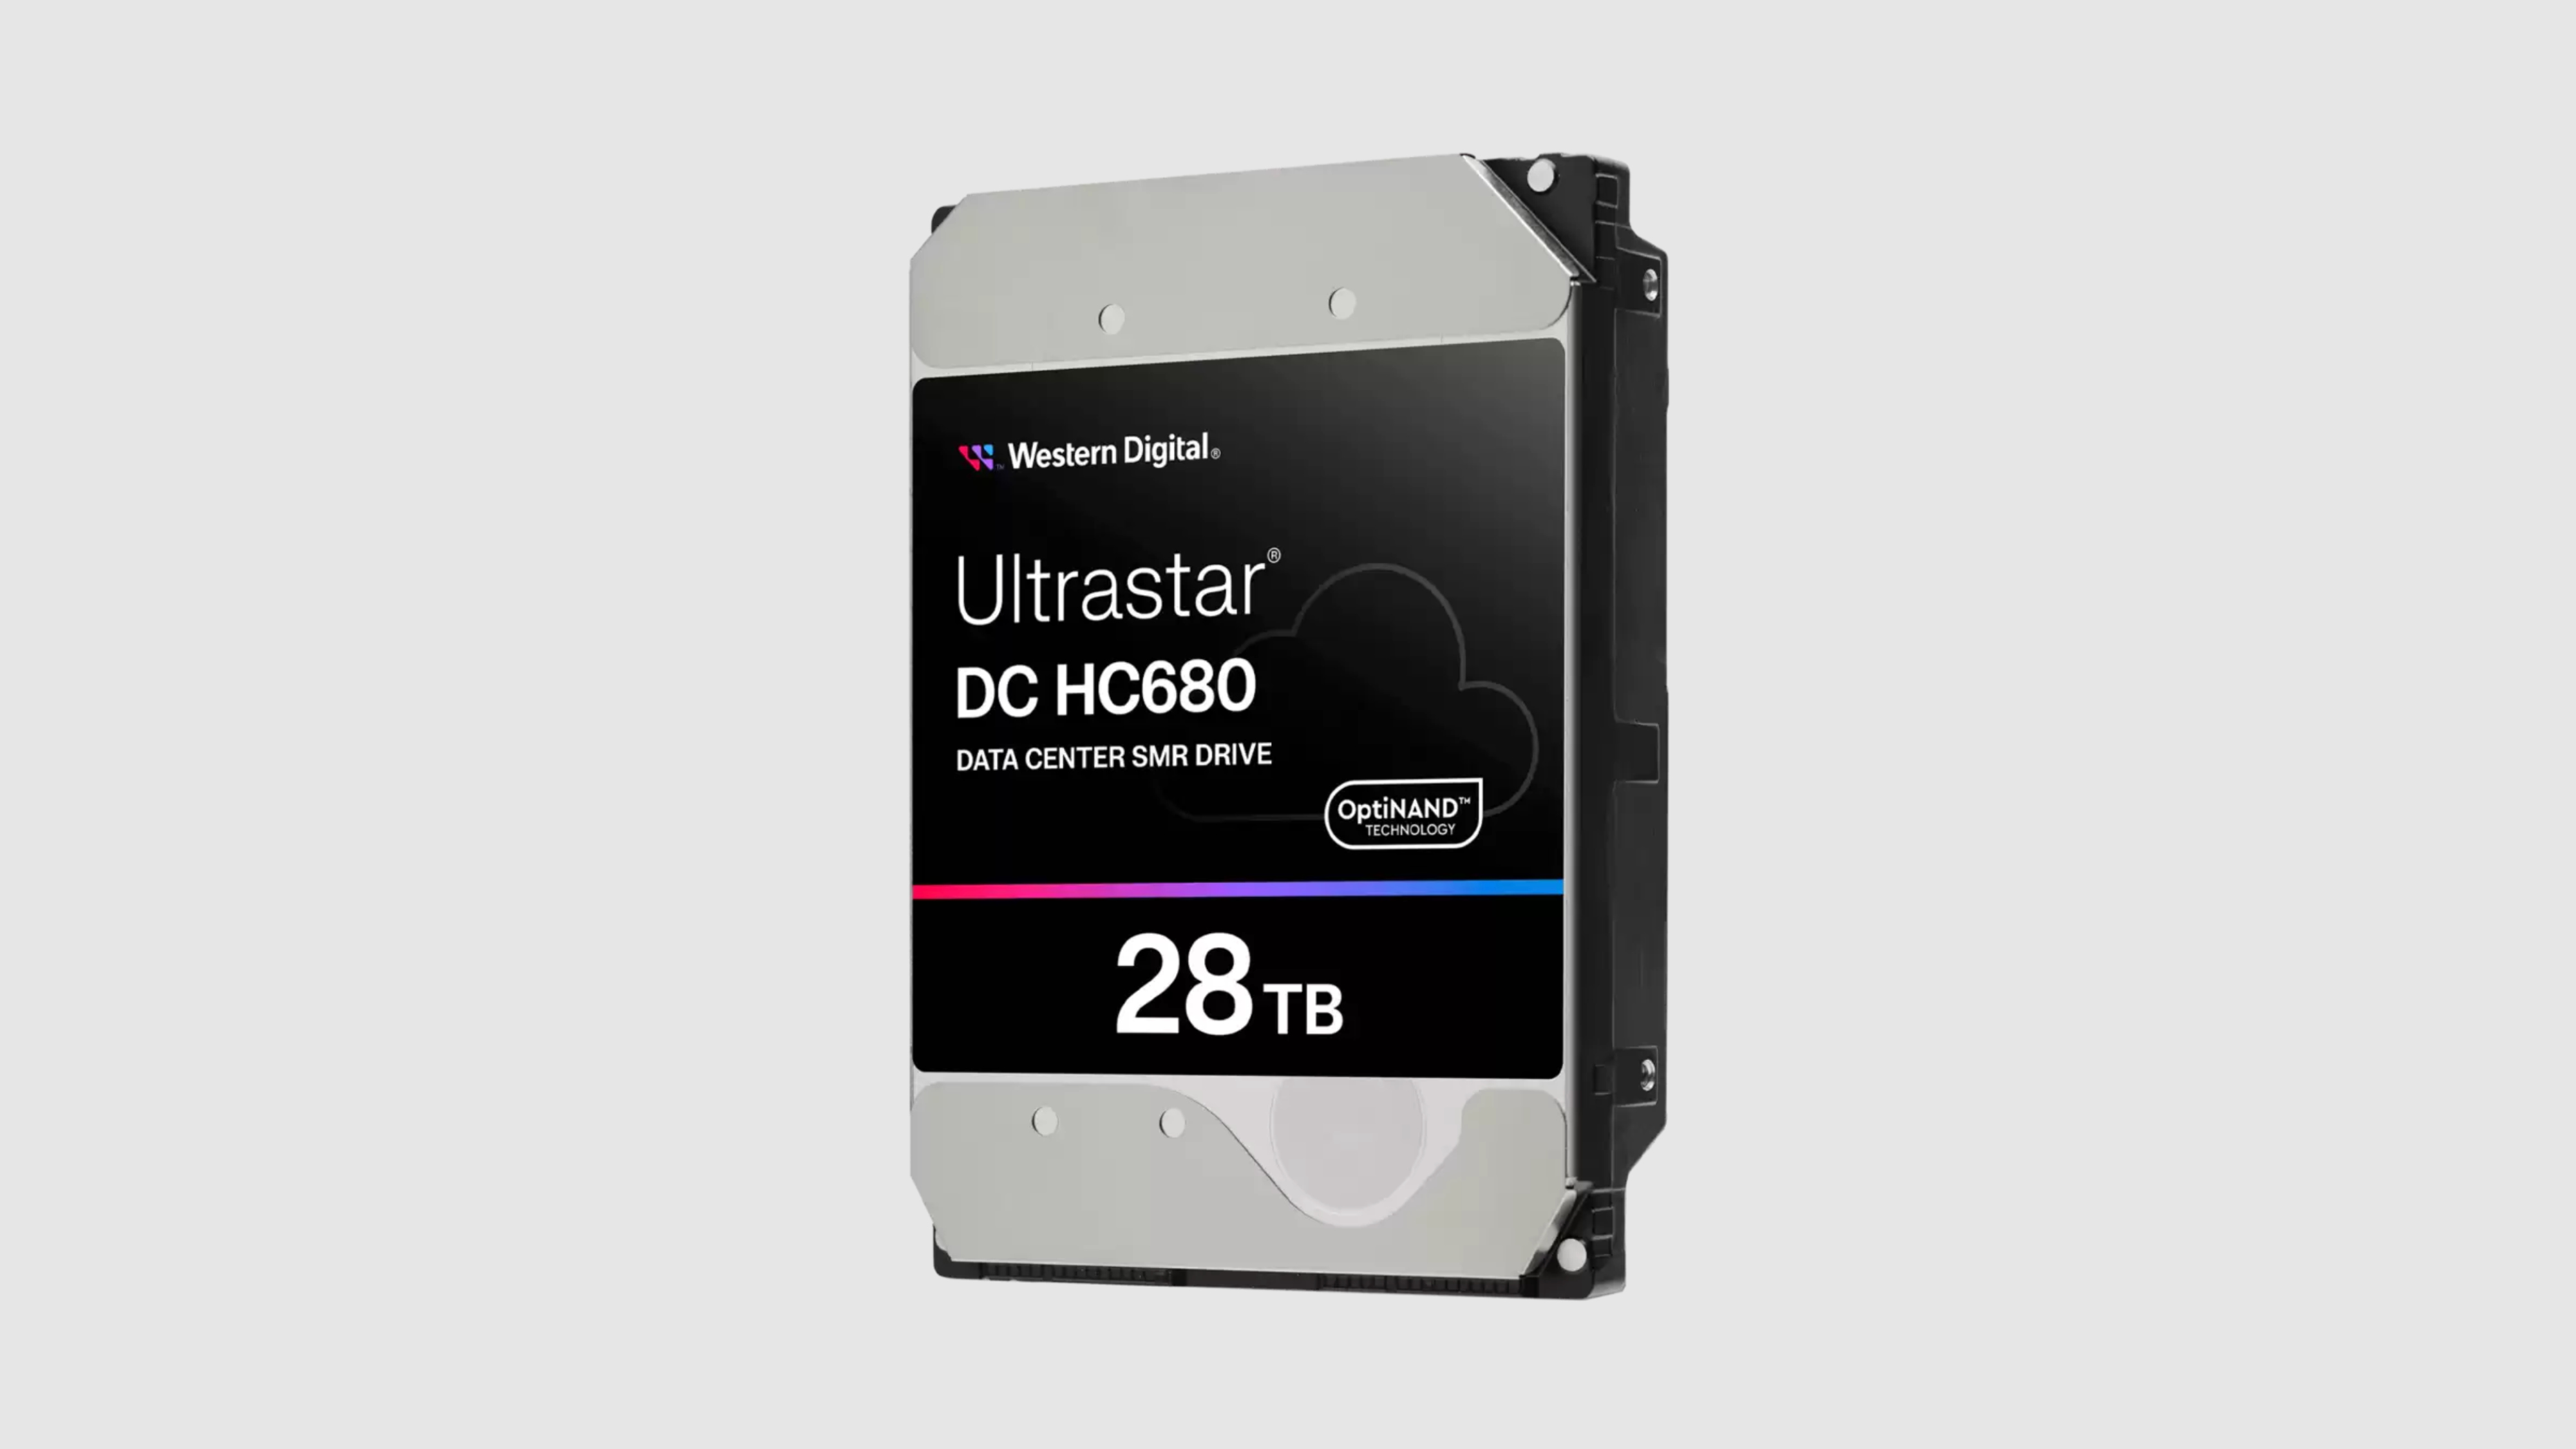 وسترن دیجیتال سرانجام در حالی که رقابت برای ۳۰ ترابایت به نقطه جوش می رسد، از هارد دیسک ۲۸ ترابایتی رونمایی می کند – اما Ultrastar DC HC680 همچنان یک هارد دیتا سنتر باقی می ماند که هیچ مصرف کننده ای قادر به استفاده از آن نخواهد بود.